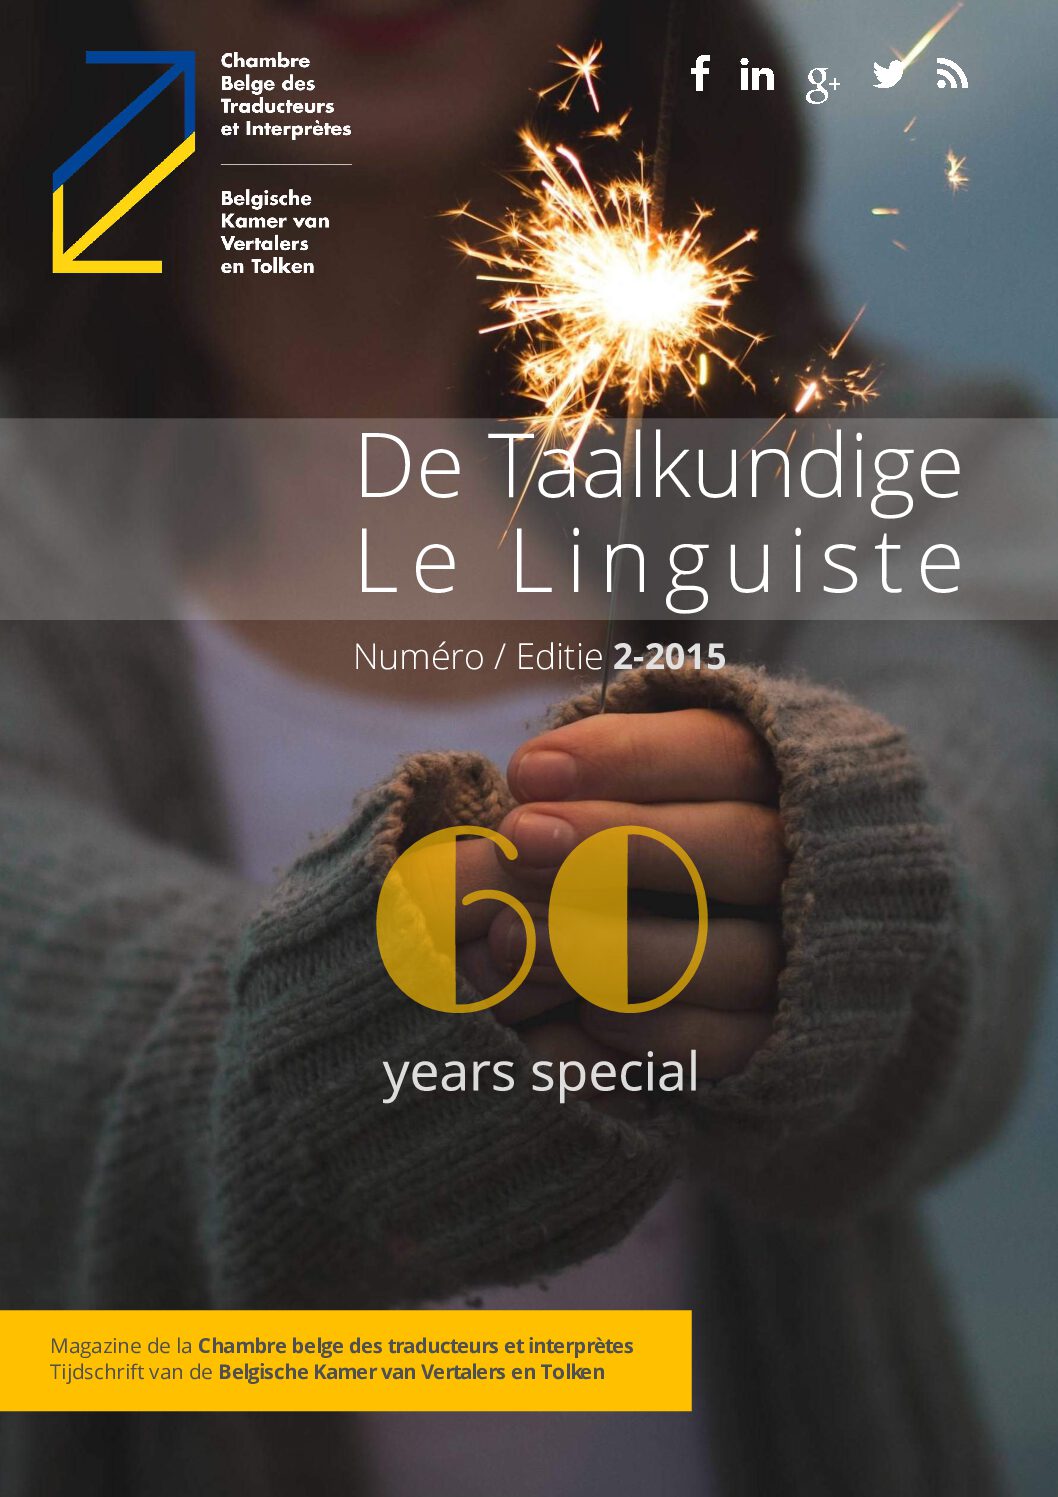 Image de présentation pour le document : De Taalkundige – Le Linguiste 2015 / 2